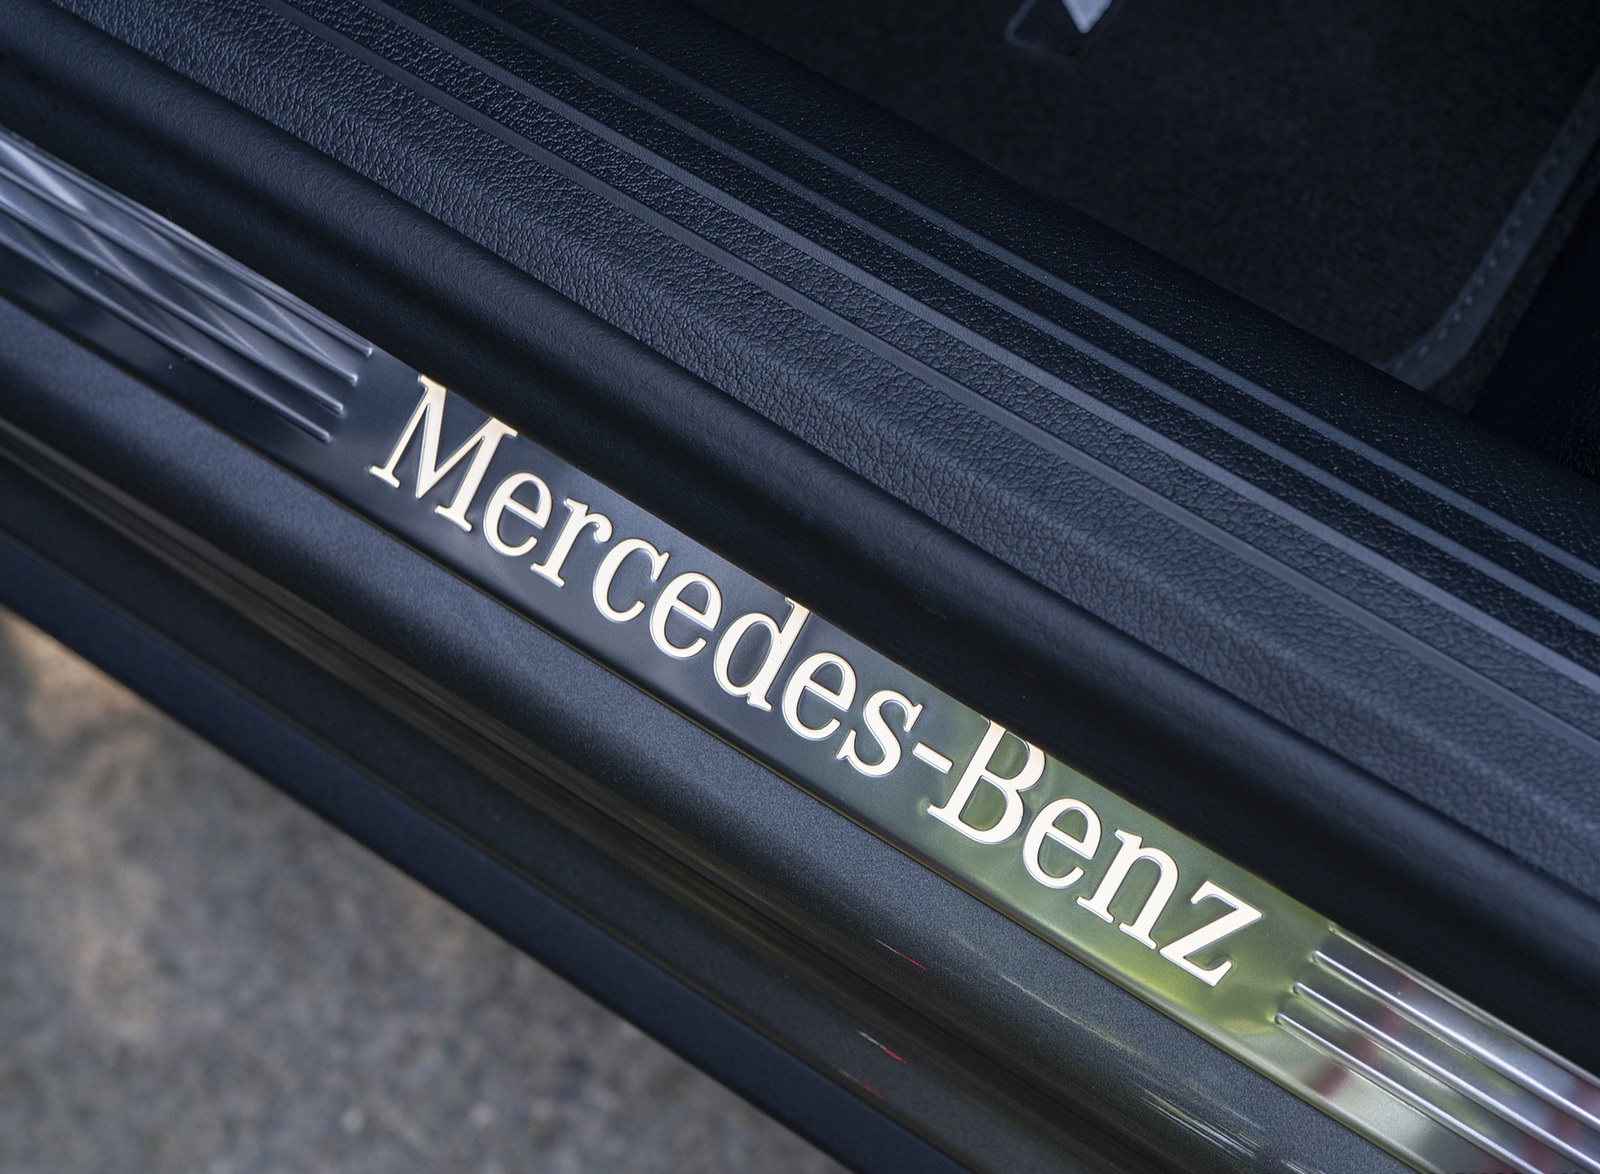 2020 Mercedes-Benz GLB 220d (UK-Spec) Door Sill Wallpapers #49 of 72